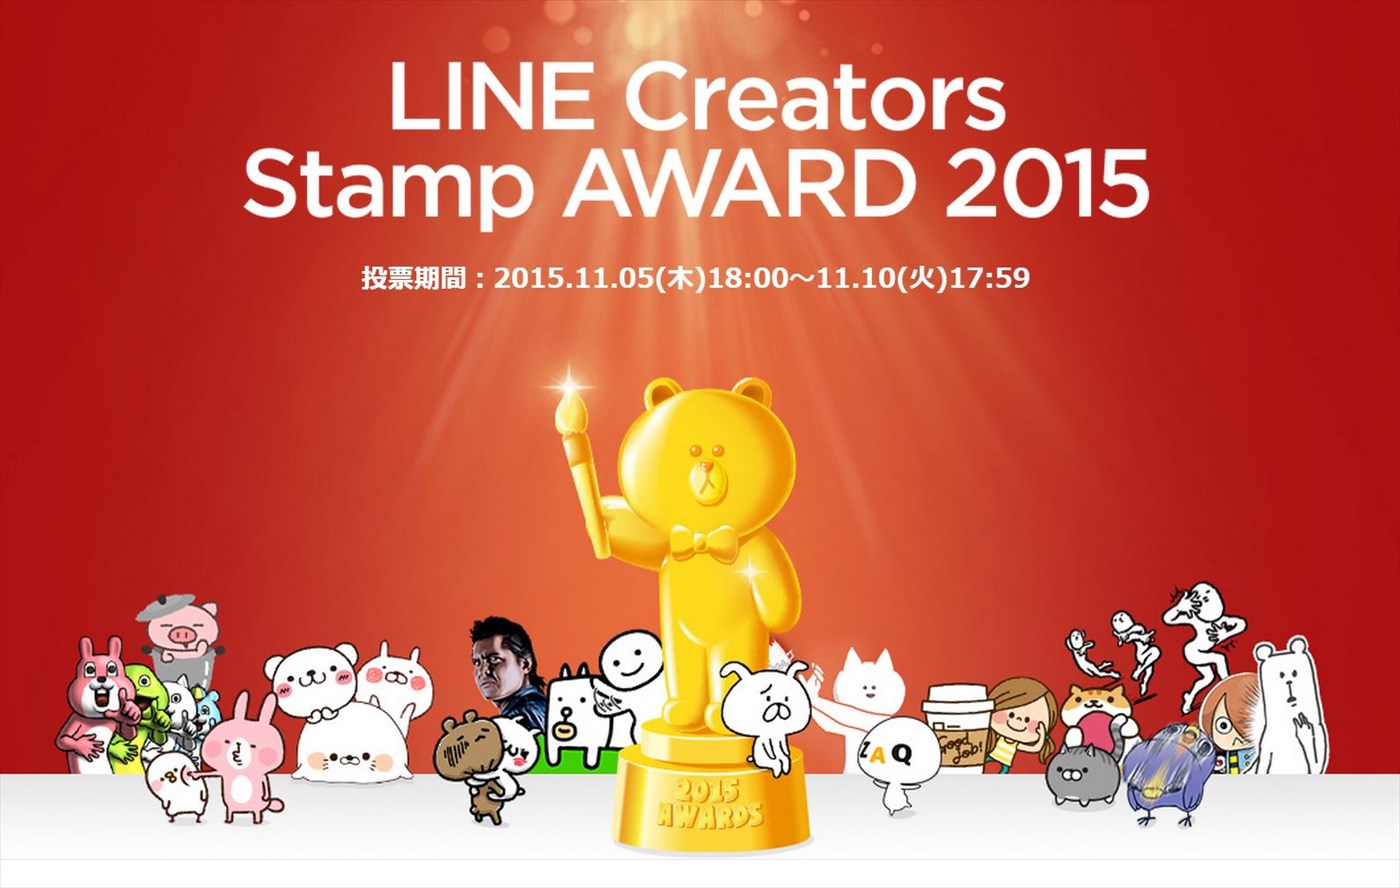 LINE、2015年を象徴するクリエイターズスタンプを表彰する｢LINE Creators Stamp AWARD 2015｣を開催